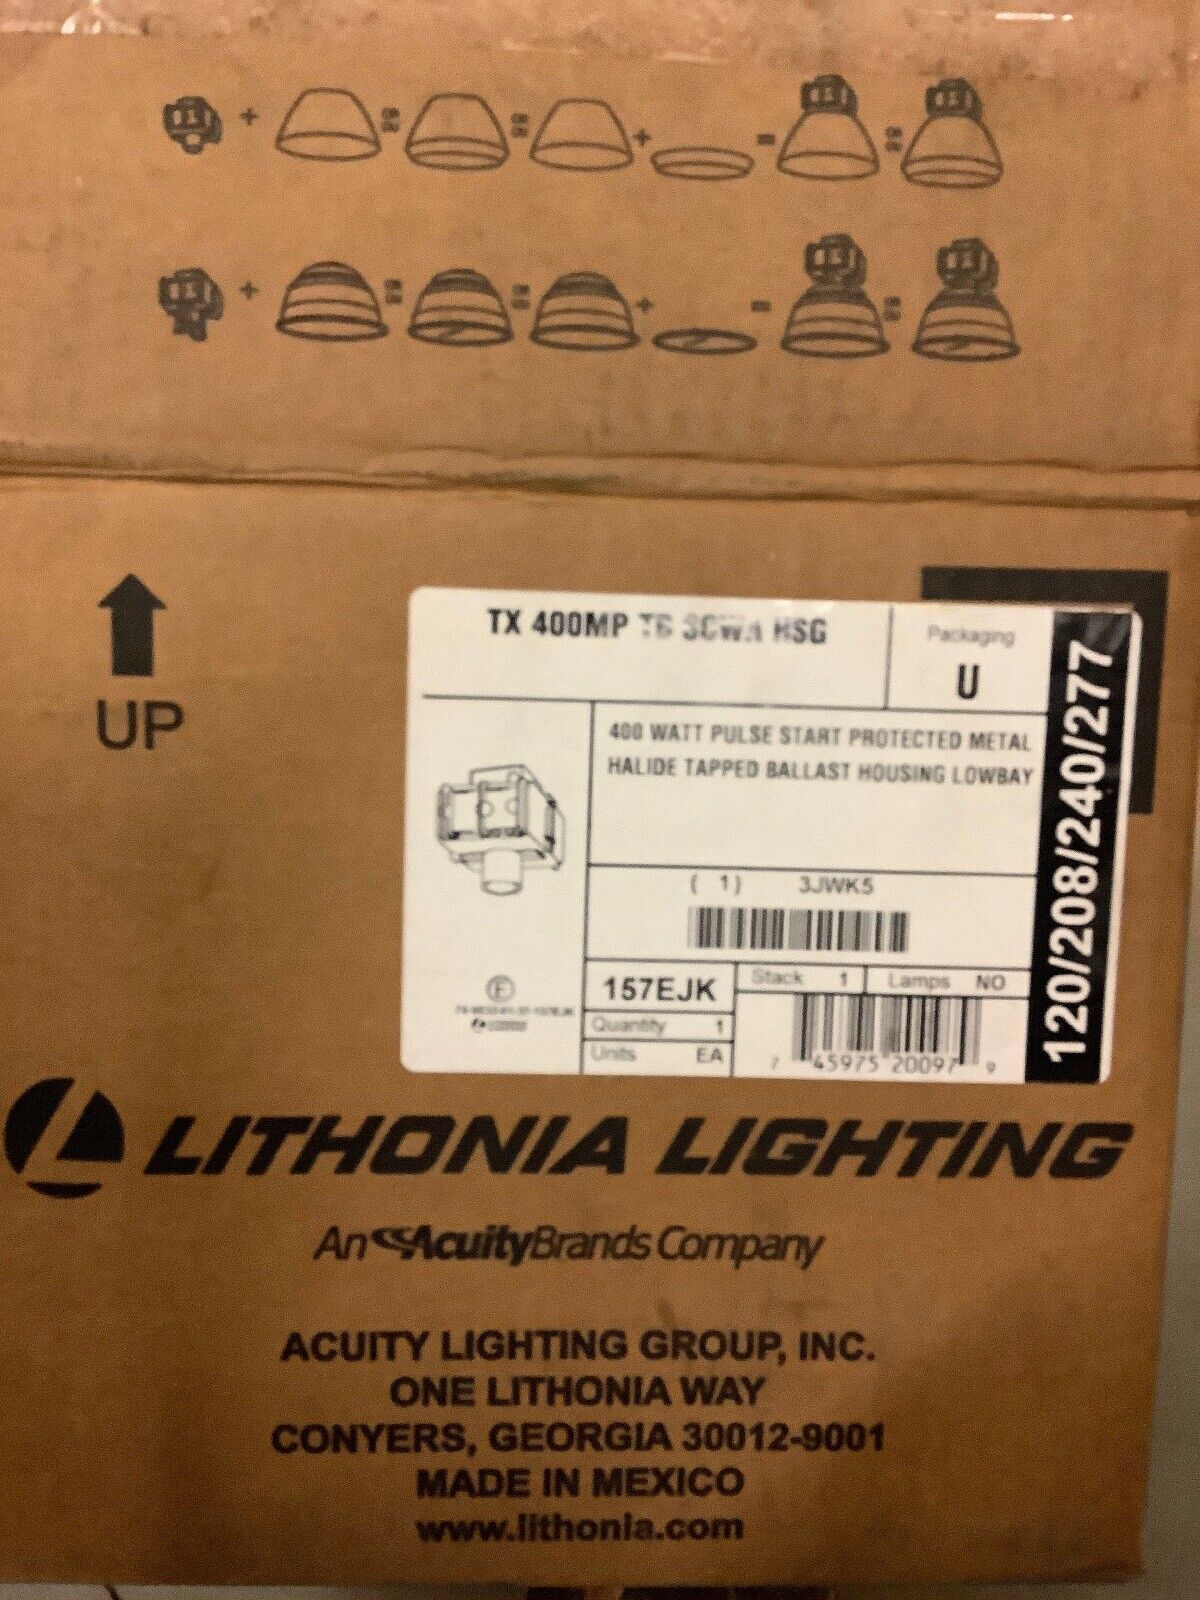 Lithonia Lighting 157EJK TX 400MP TB SCWA HSG